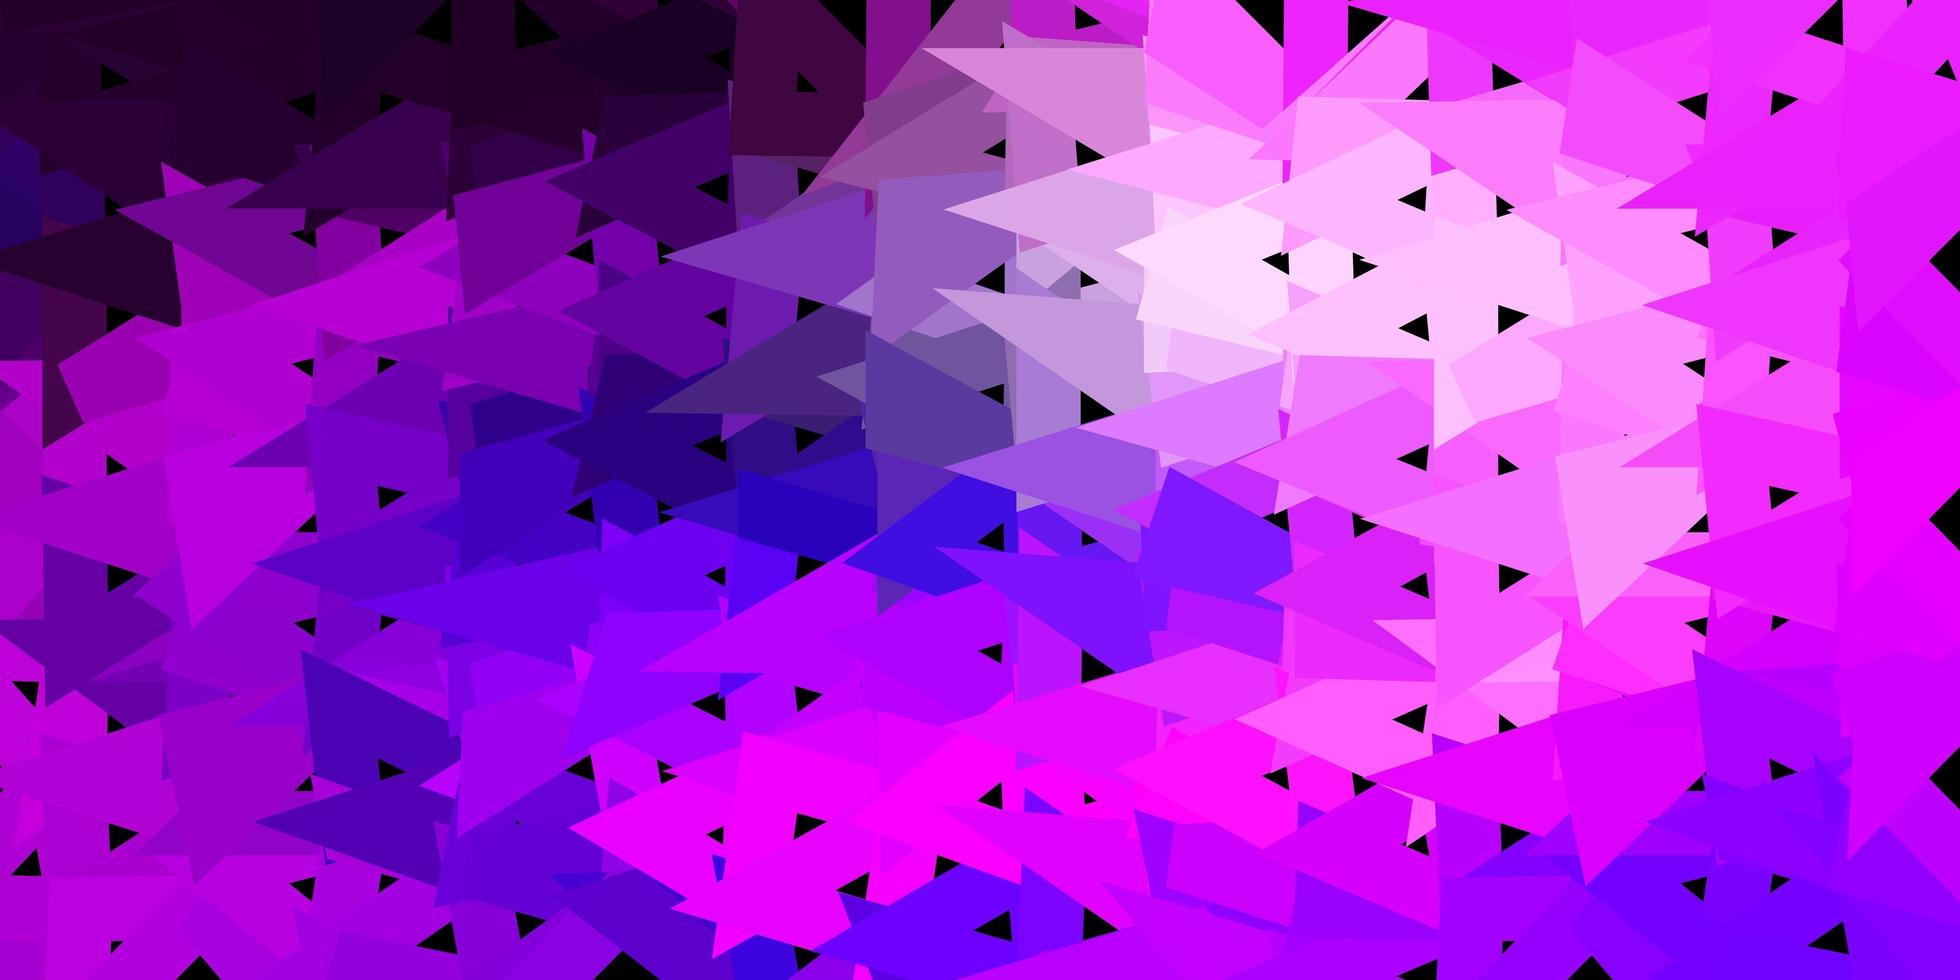 struttura del triangolo poli vettoriale viola chiaro, rosa.